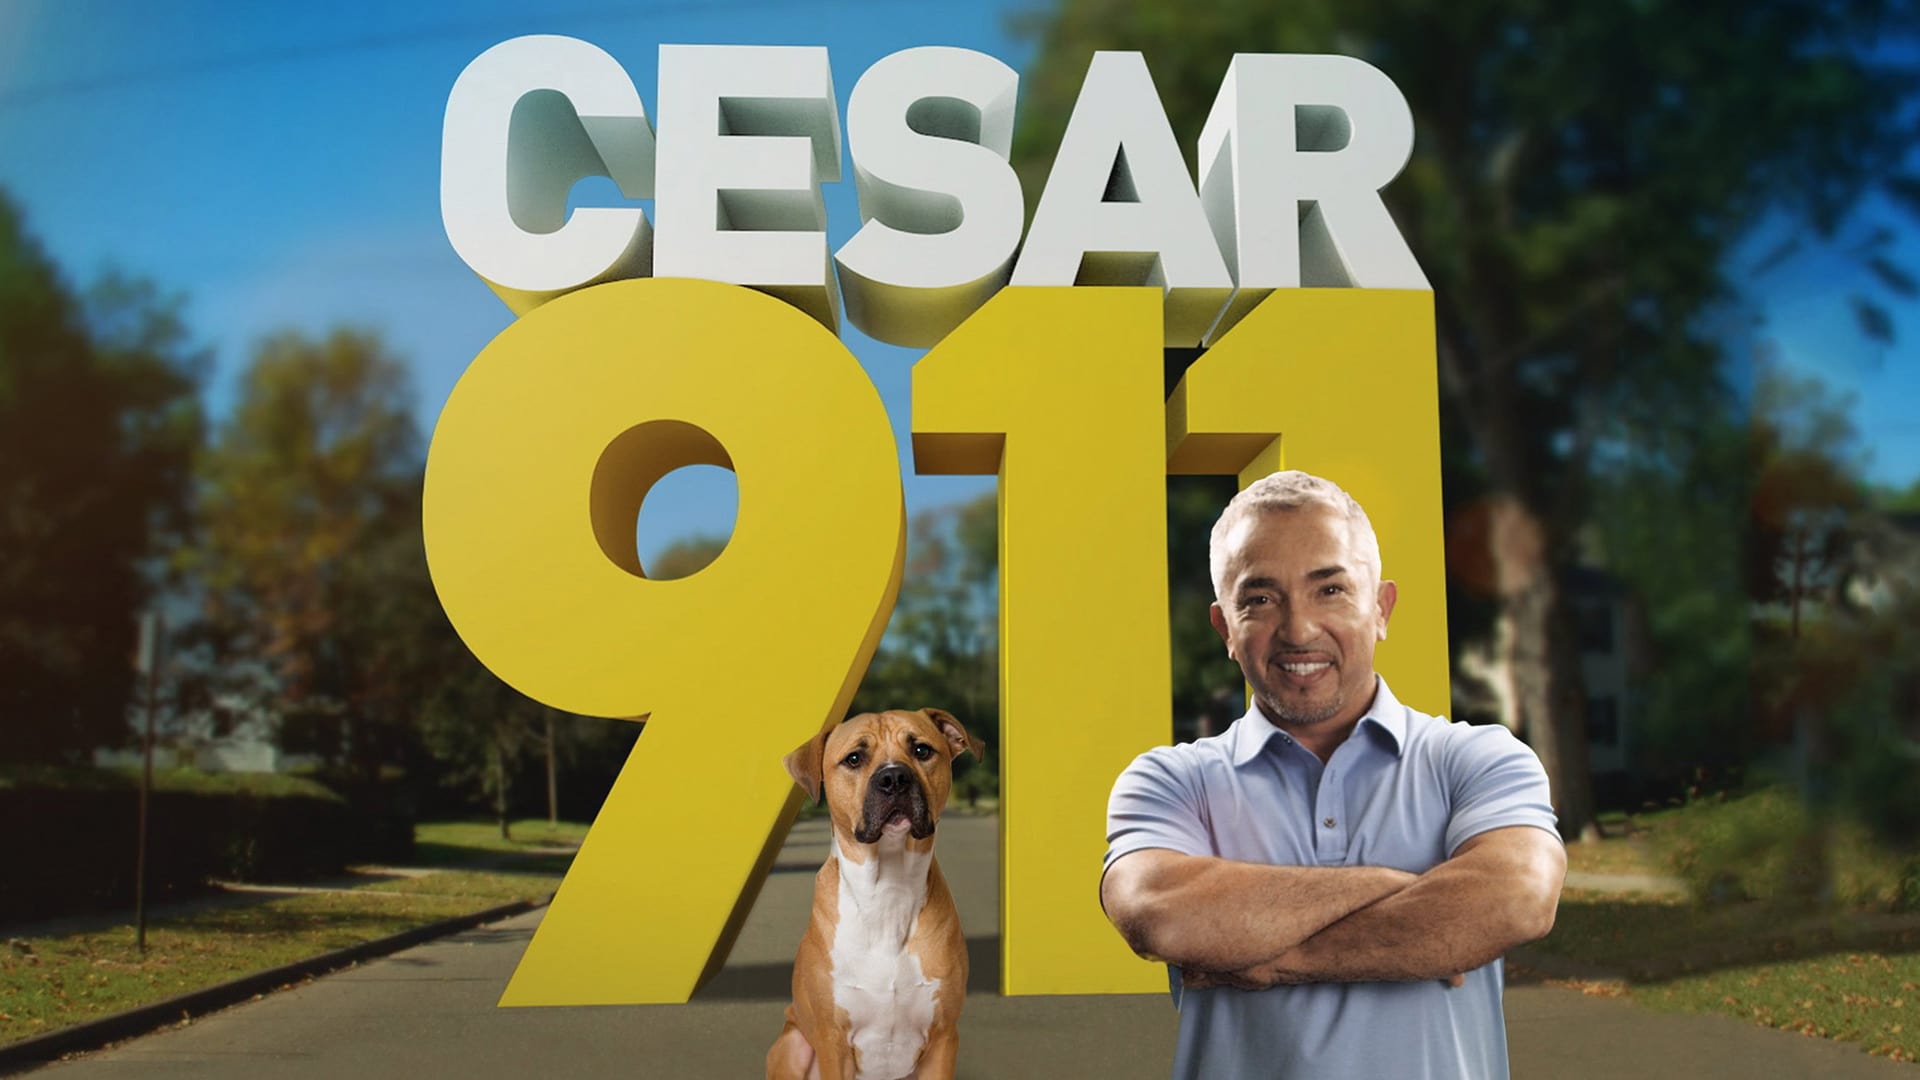 season 5 of Cesar 911